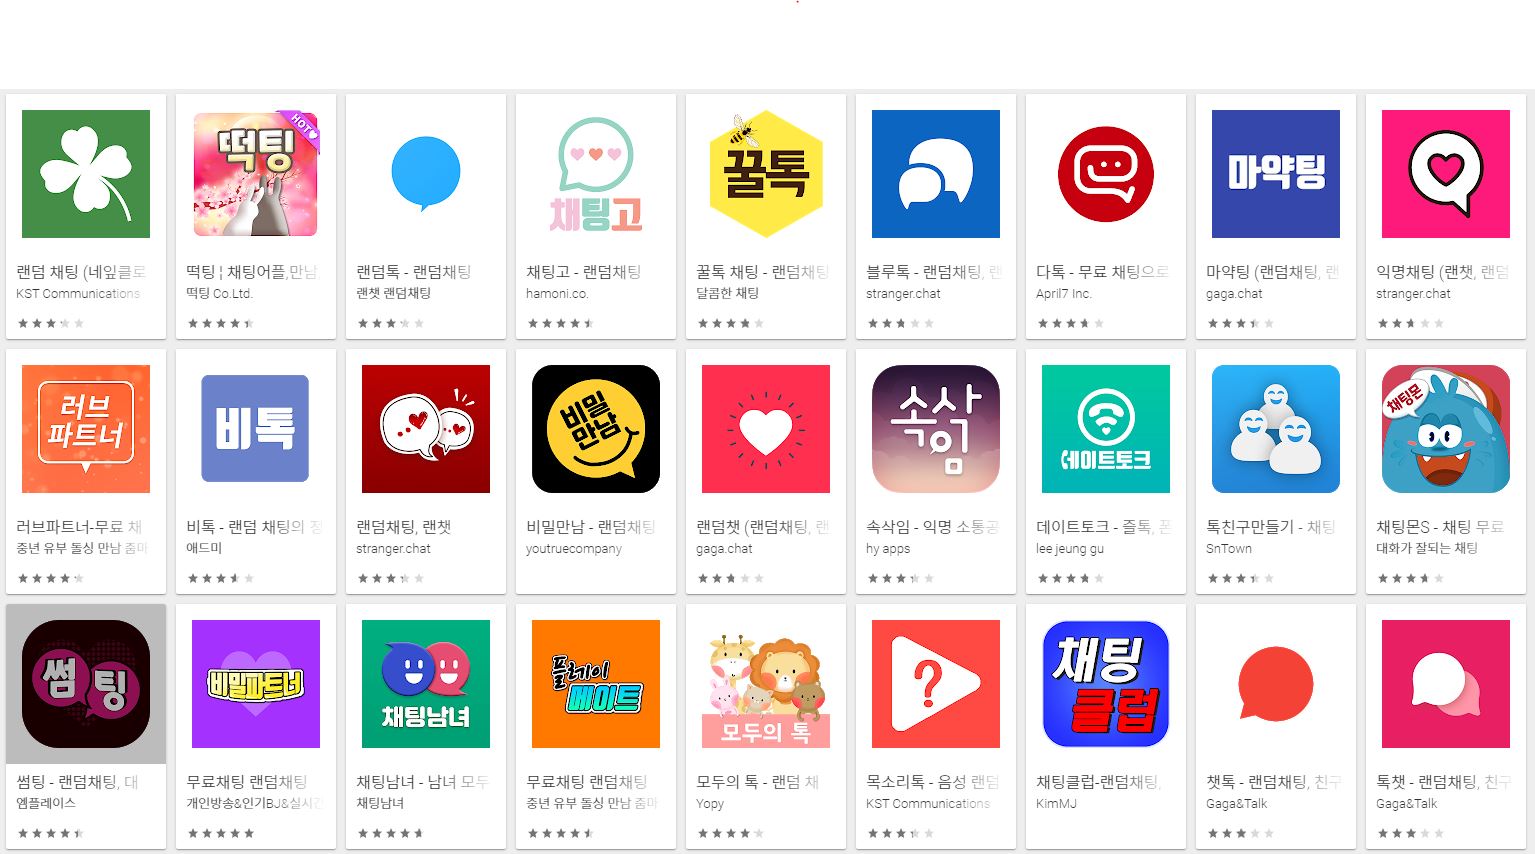 구글 플레이스토어에 검색된 '랜덤채팅'앱은 총 250개에 달했다.